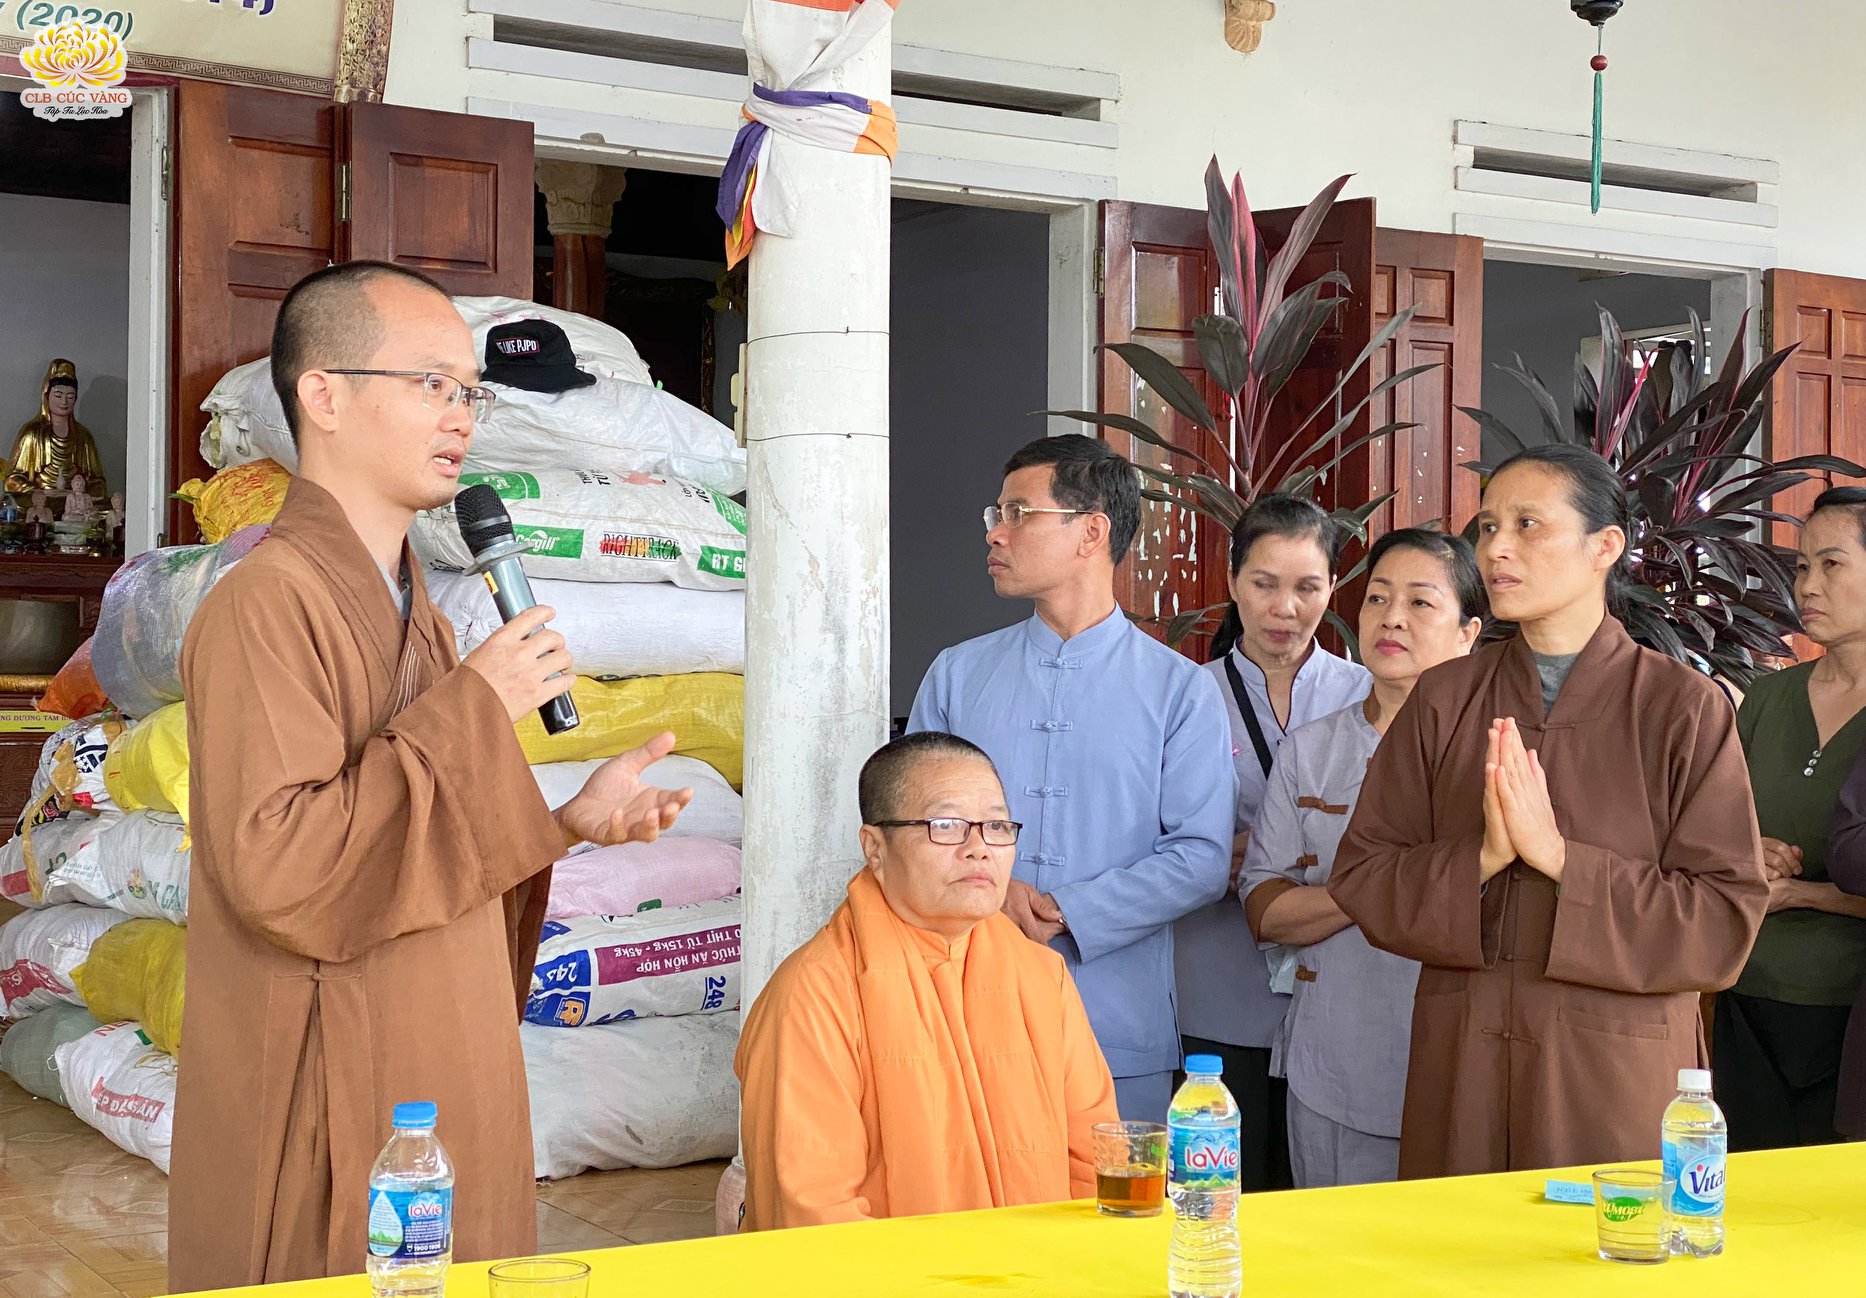 Đoàn từ thiện CLB Cúc Vàng đã trao những phần quà cho những hộ dân có hoàn cảnh khó khăn tại tỉnh Quảng Nam